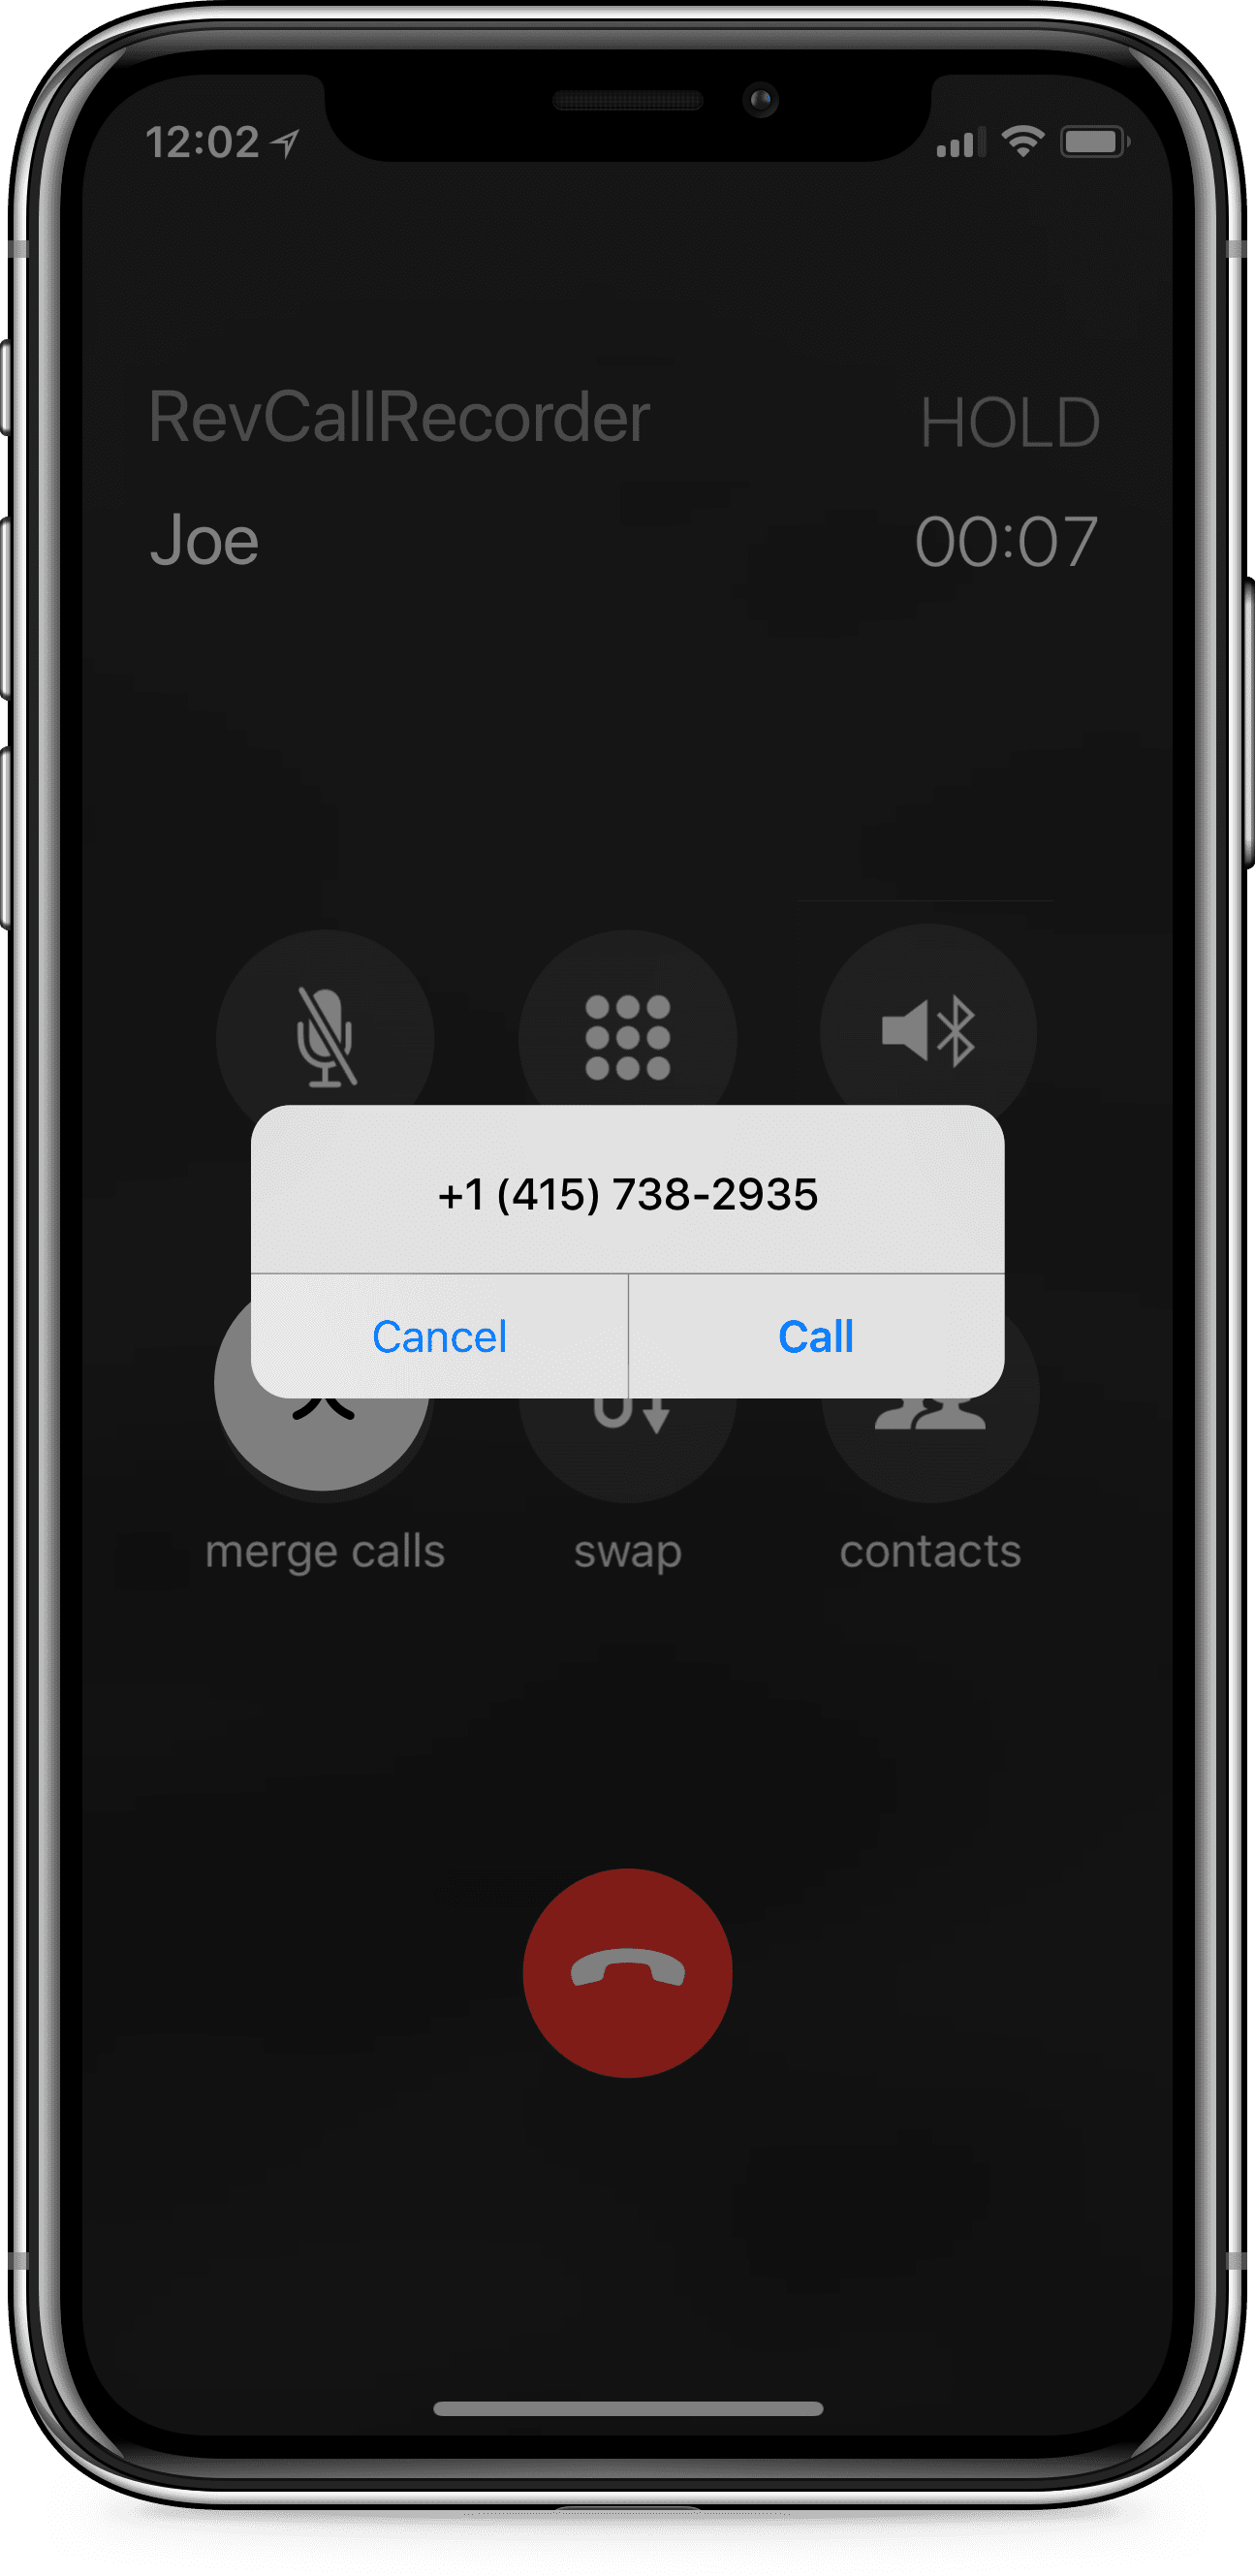 用iPhone上的Rev电话录音软件录下了一个叫乔的人的电话